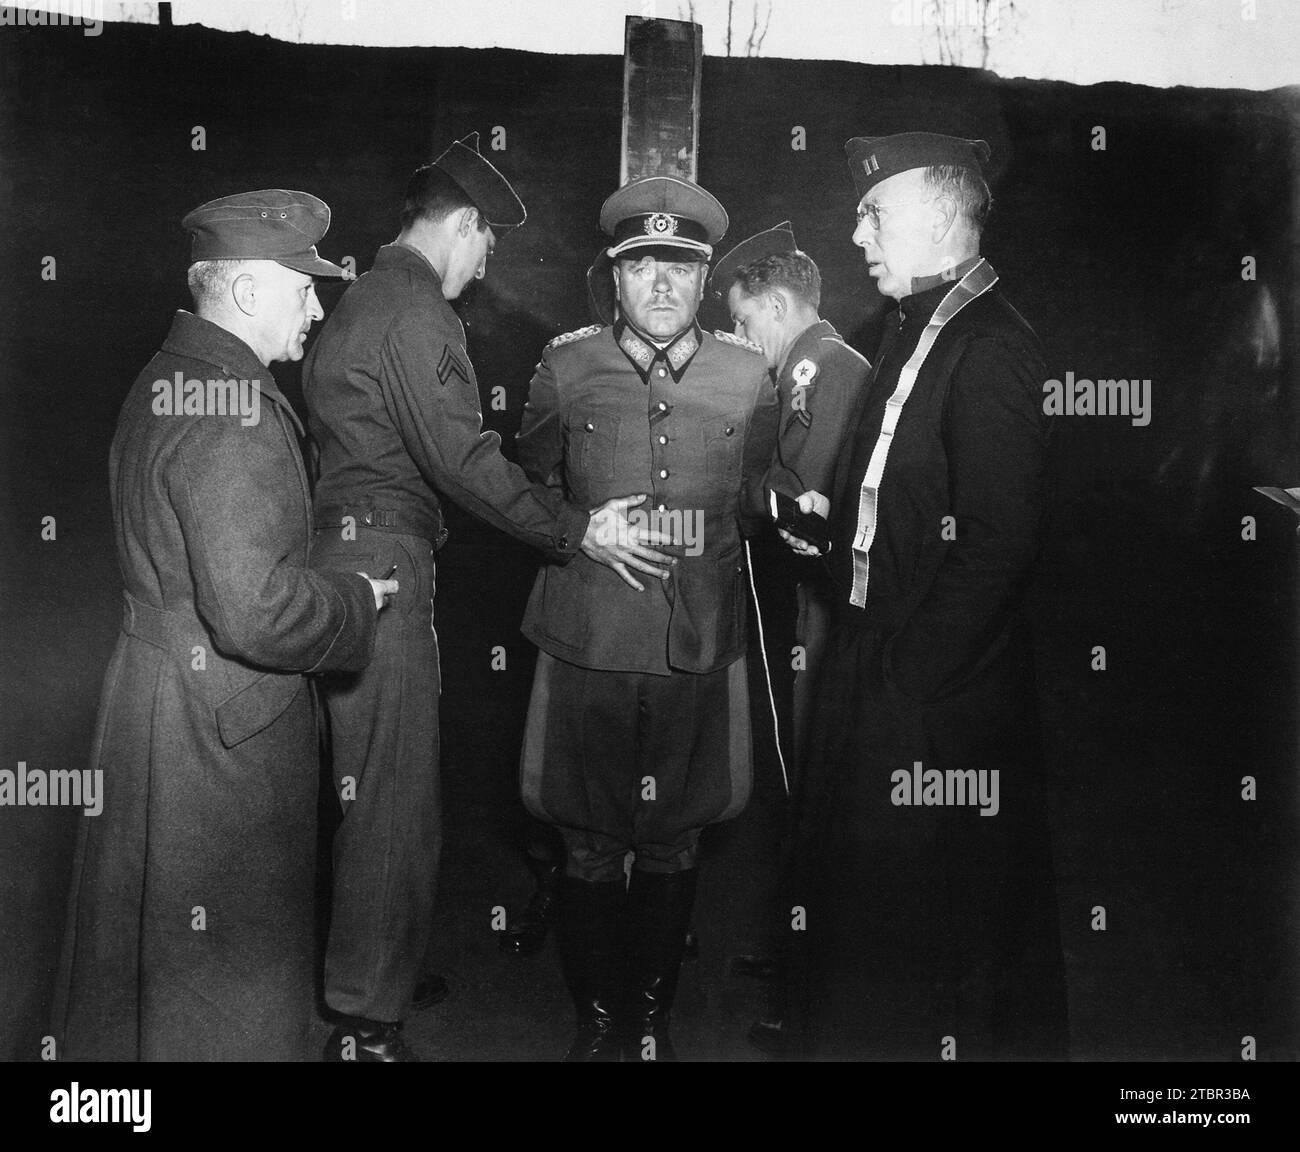 Le général allemand Anton Dostler est attaché à un pieu avant son exécution par un peloton d'exécution dans la palissade Aversa. Le général a été reconnu coupable et condamné Banque D'Images